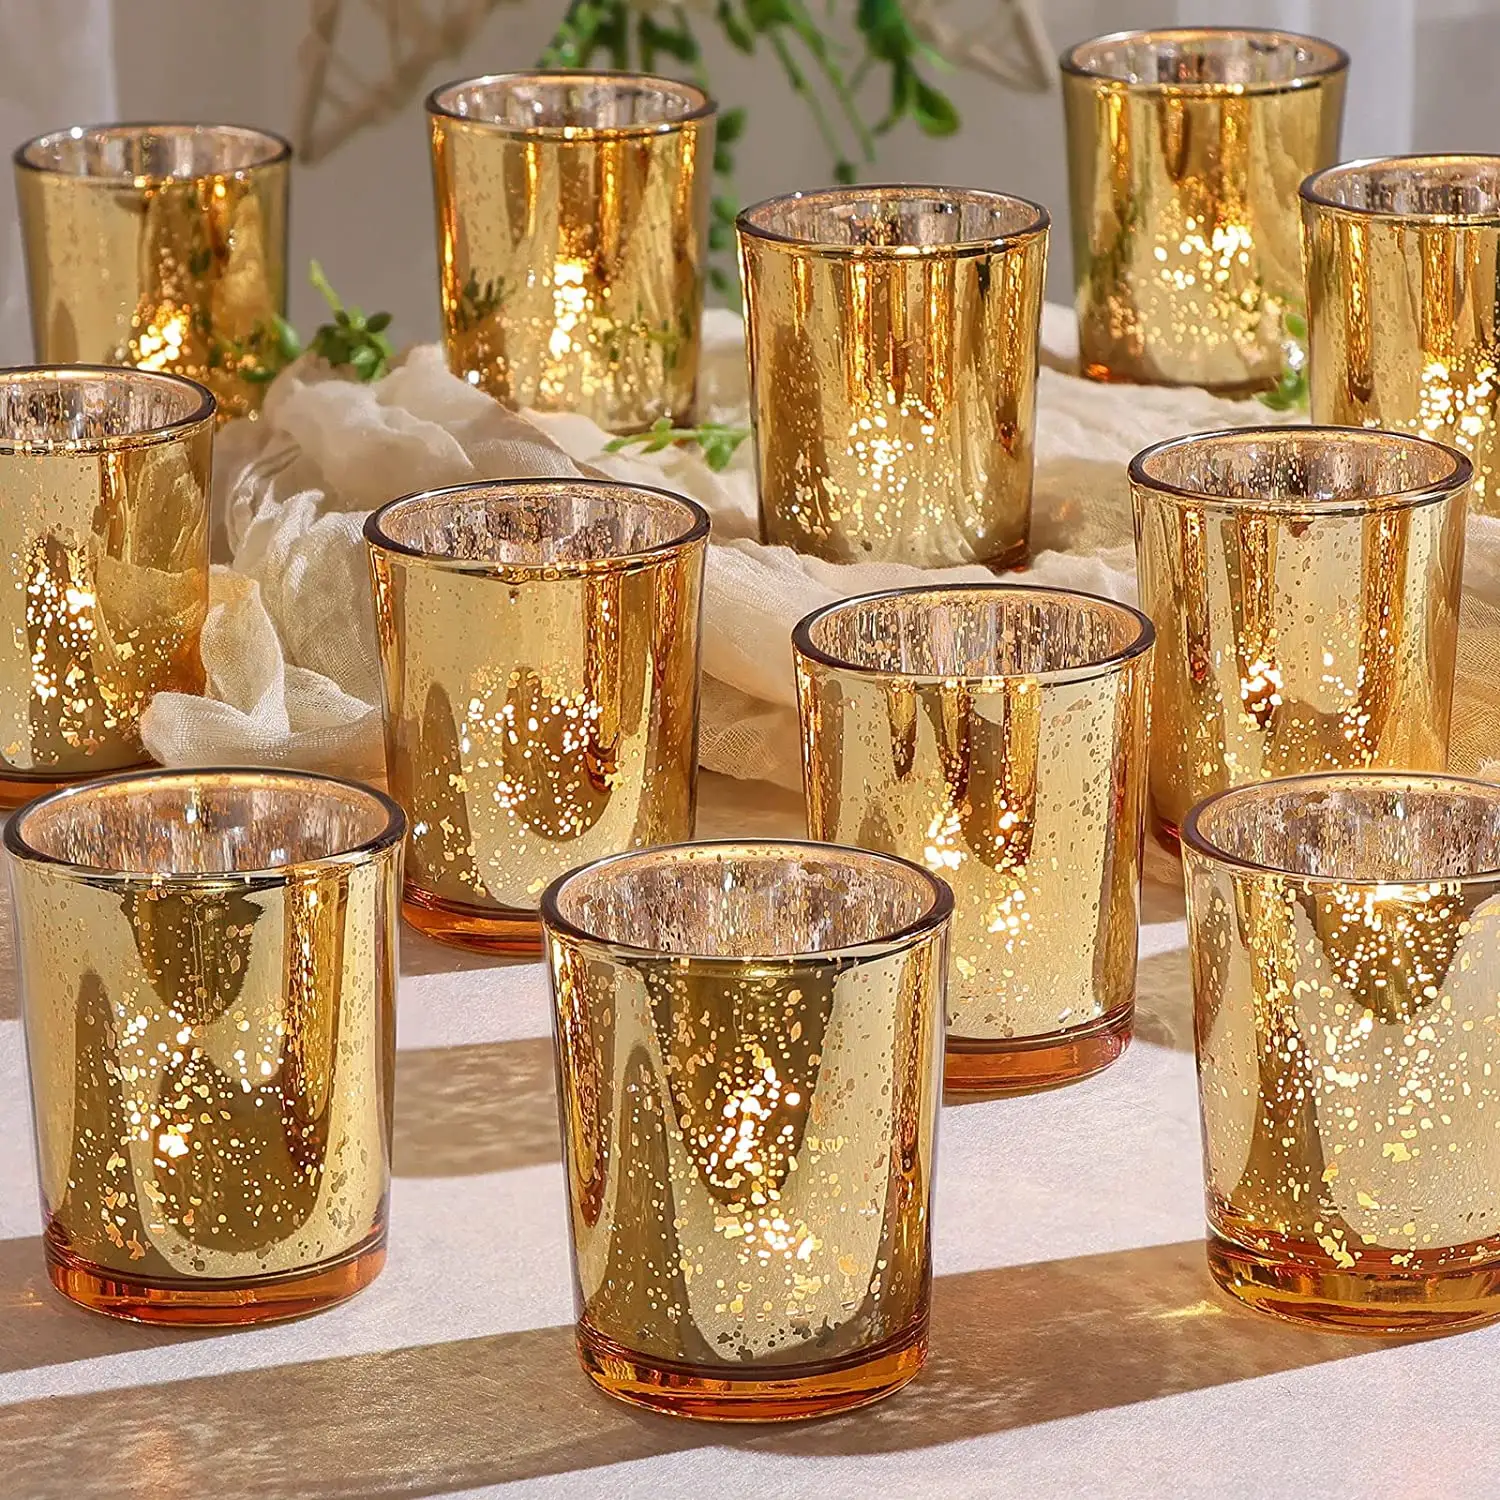 Gold Quecksilber glas Tee licht Votiv kerzenhalter Hochzeit Mittelstücke für Tisch dekorationen